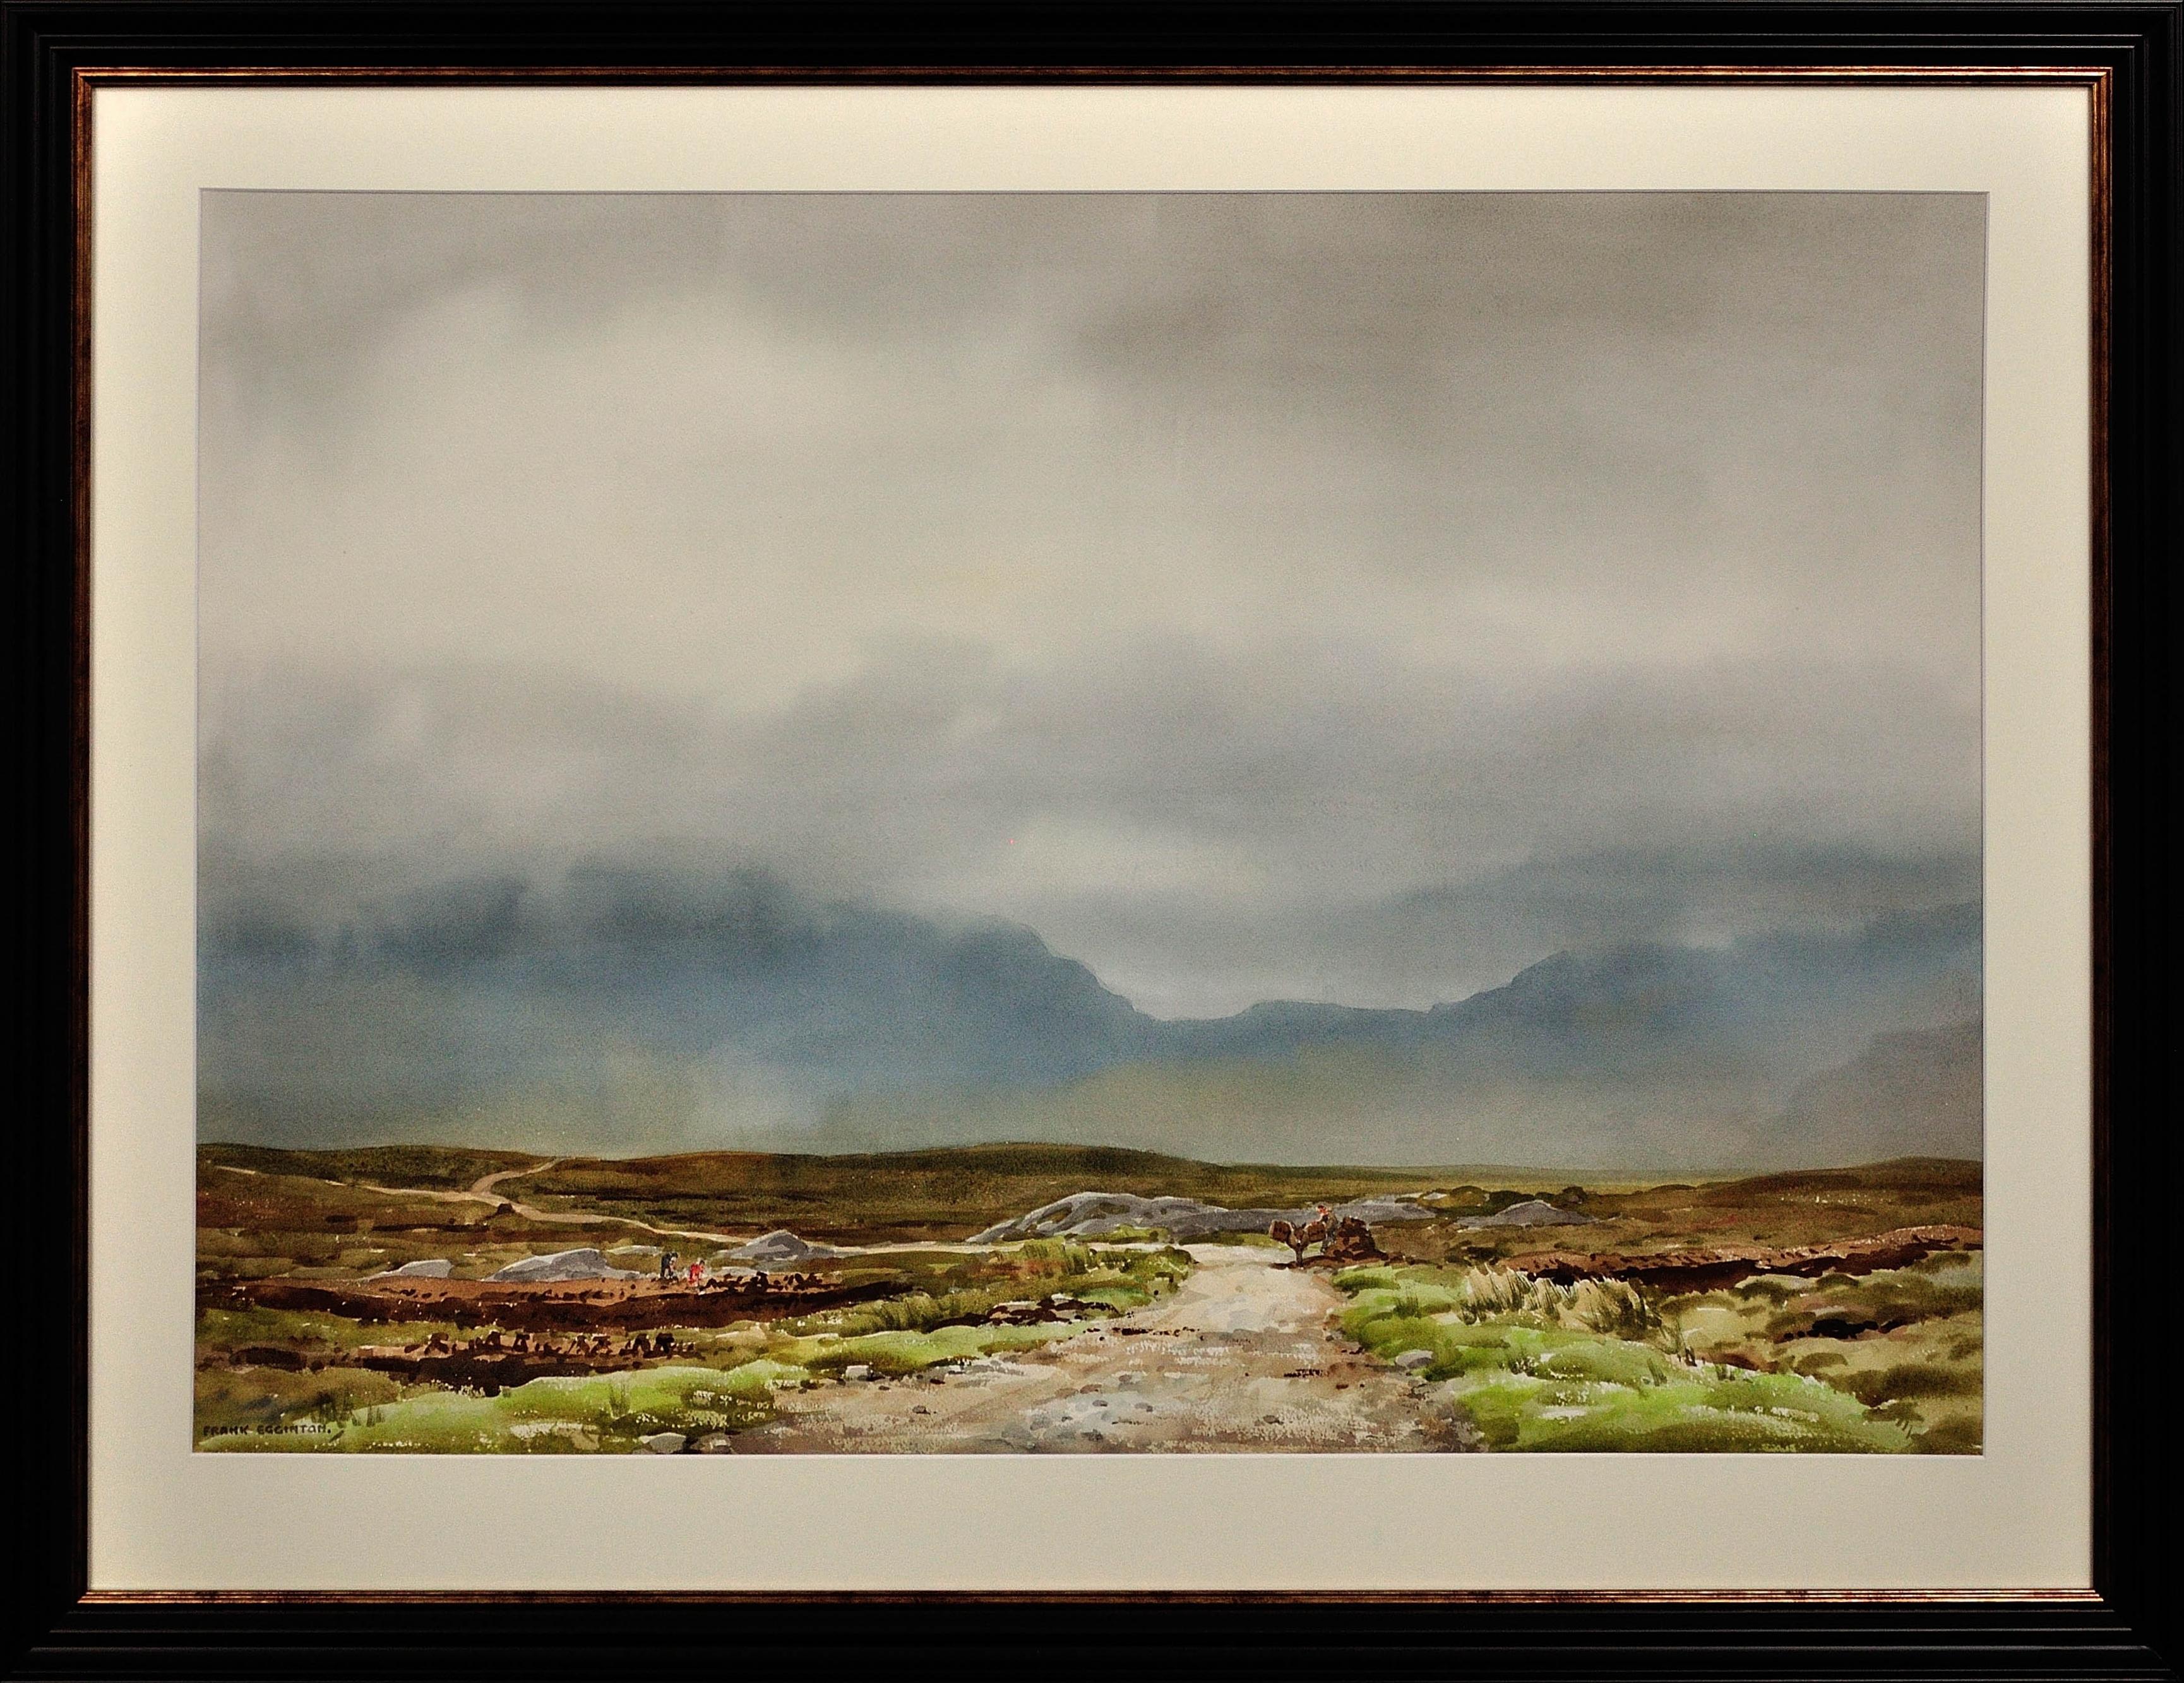 Frank Egginton Landscape Art – Die Maamturk-Gebirge aus Recess, Connemara, Irland. Gerahmtes irisches Aquarell.